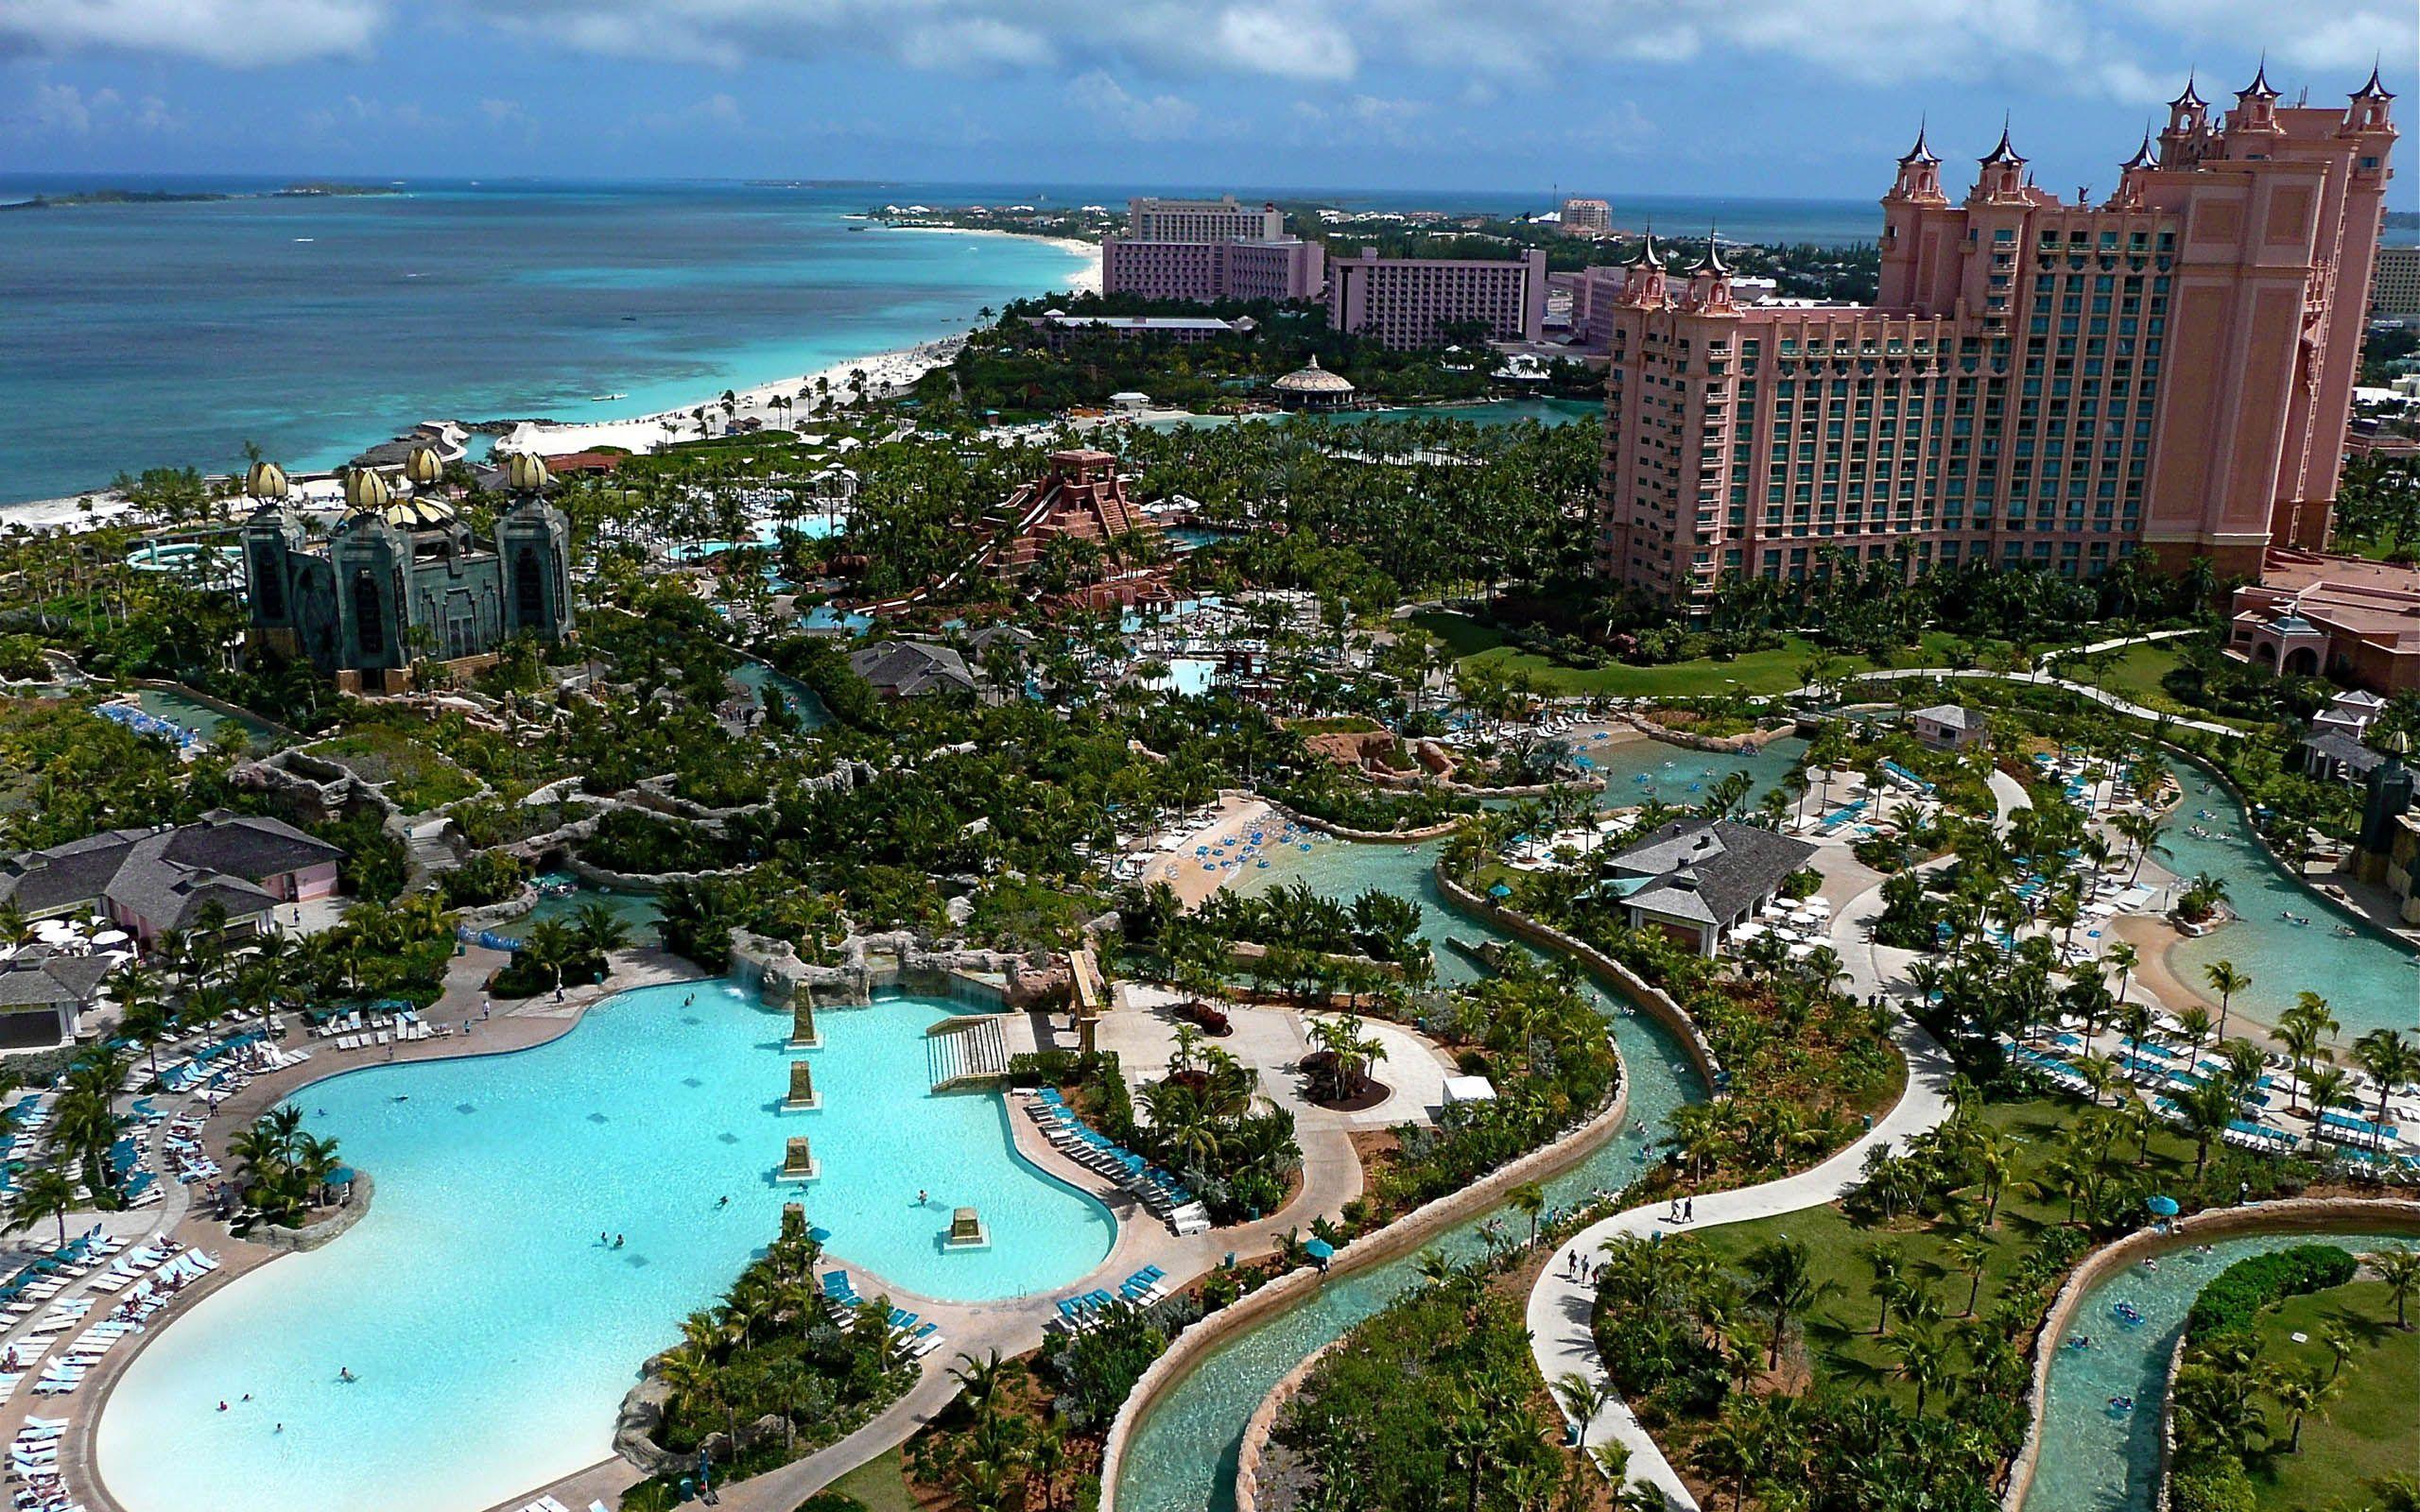 bahamas image. Atlantis Panoramic, Nassau, Bahamas. America's